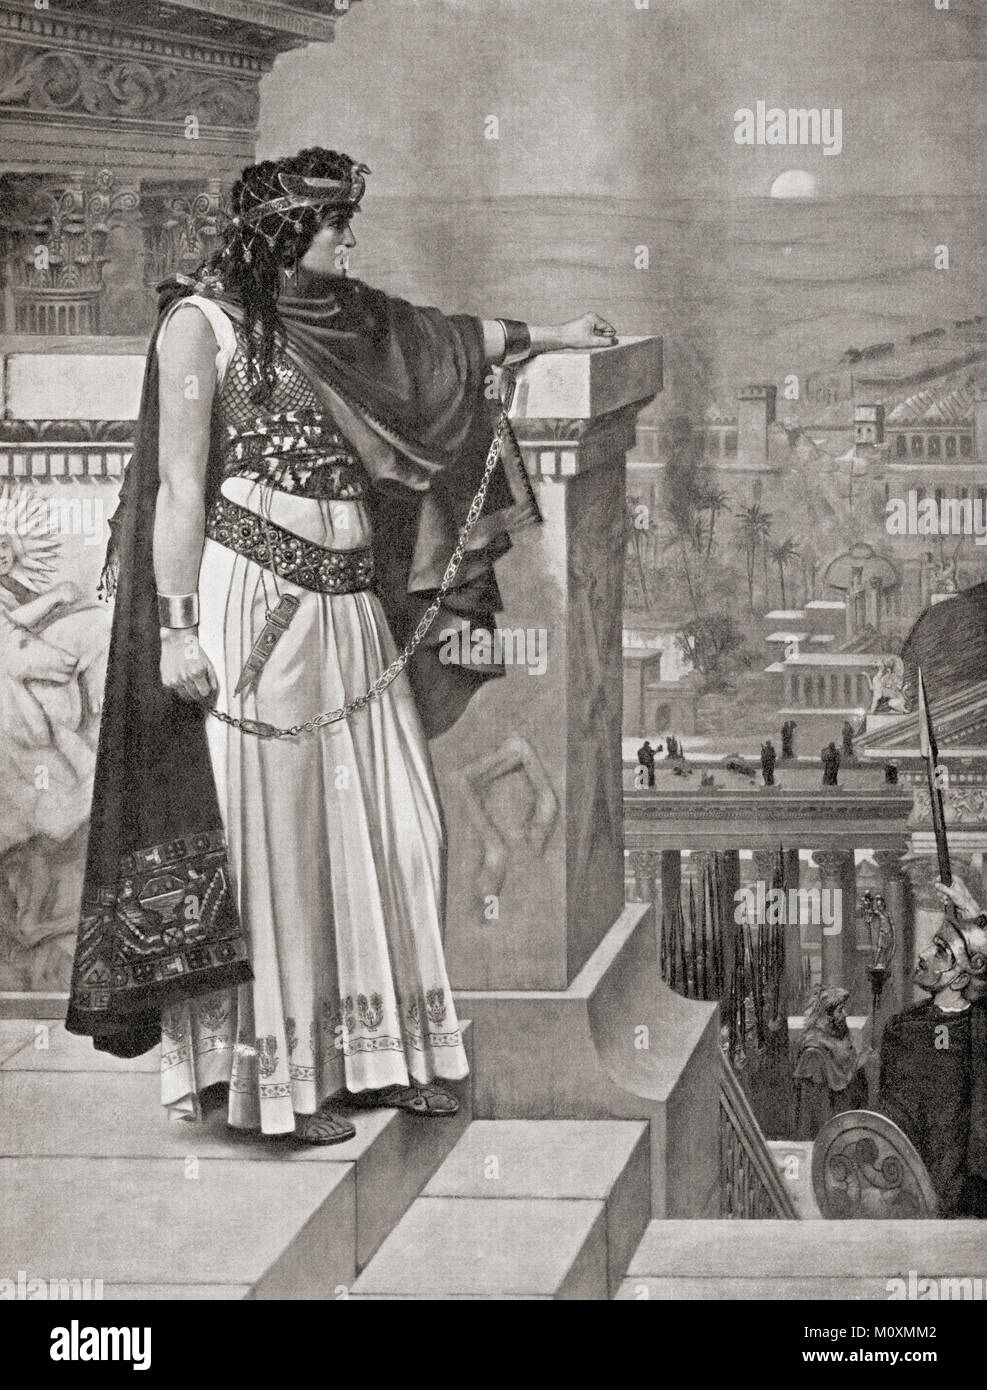 Zenobia des letzten Blick nach Palmyra, nachdem er durch Aurelian in 272 AD besiegt. Septimia Zenobia, c 240 - C 274 AD. Dritten jahrhundert Königin der Syrien-basierte palmyrene Empire. Von Hutchinson's Geschichte der Nationen, veröffentlicht 1915. Stockfoto